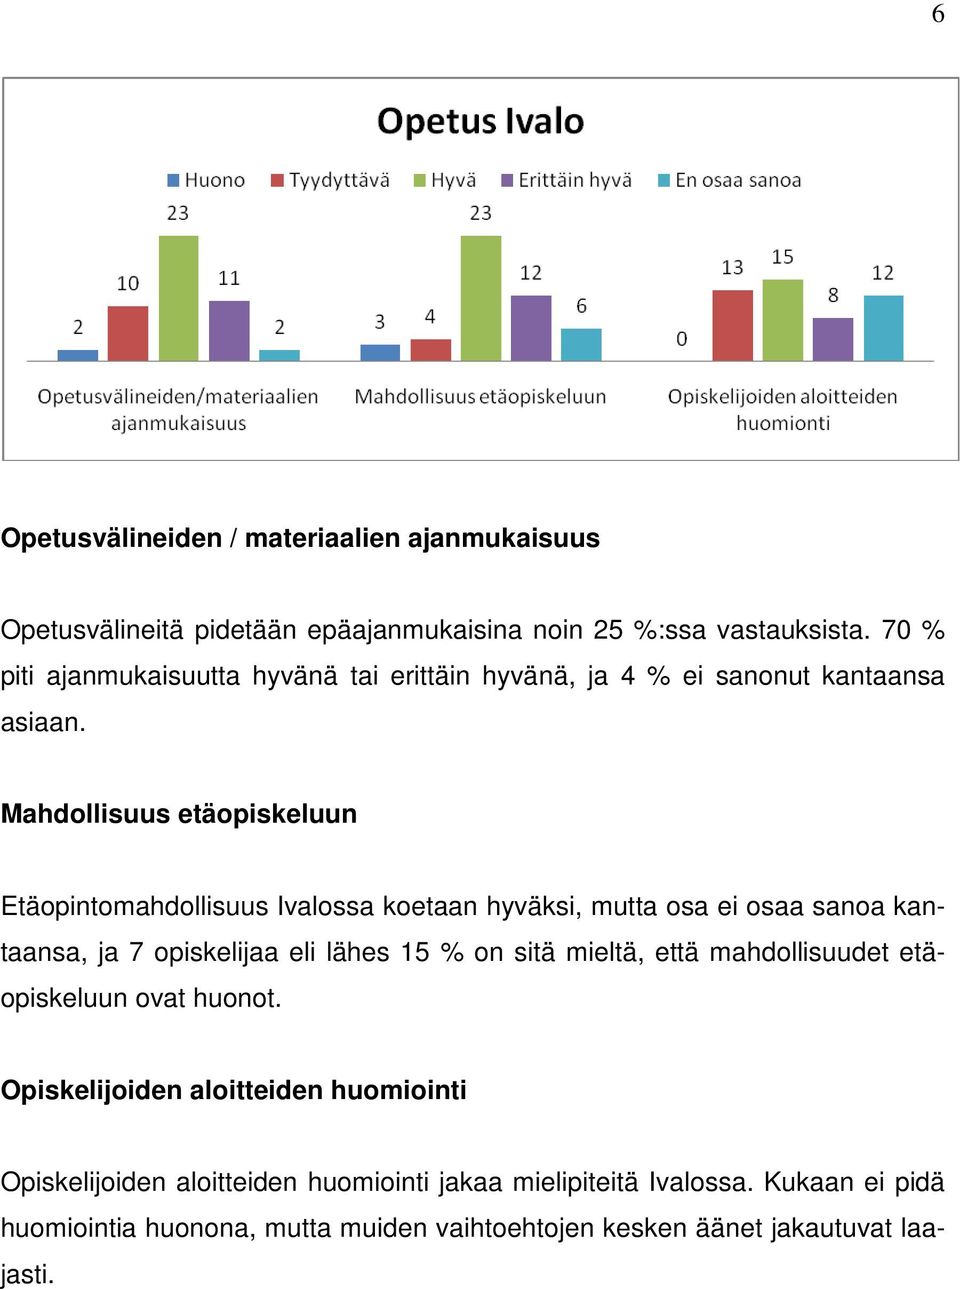 Mahdollisuus etäopiskeluun Etäopintomahdollisuus Ivalossa koetaan hyväksi, mutta osa ei osaa sanoa kantaansa, ja 7 opiskelijaa eli lähes 15 % on sitä